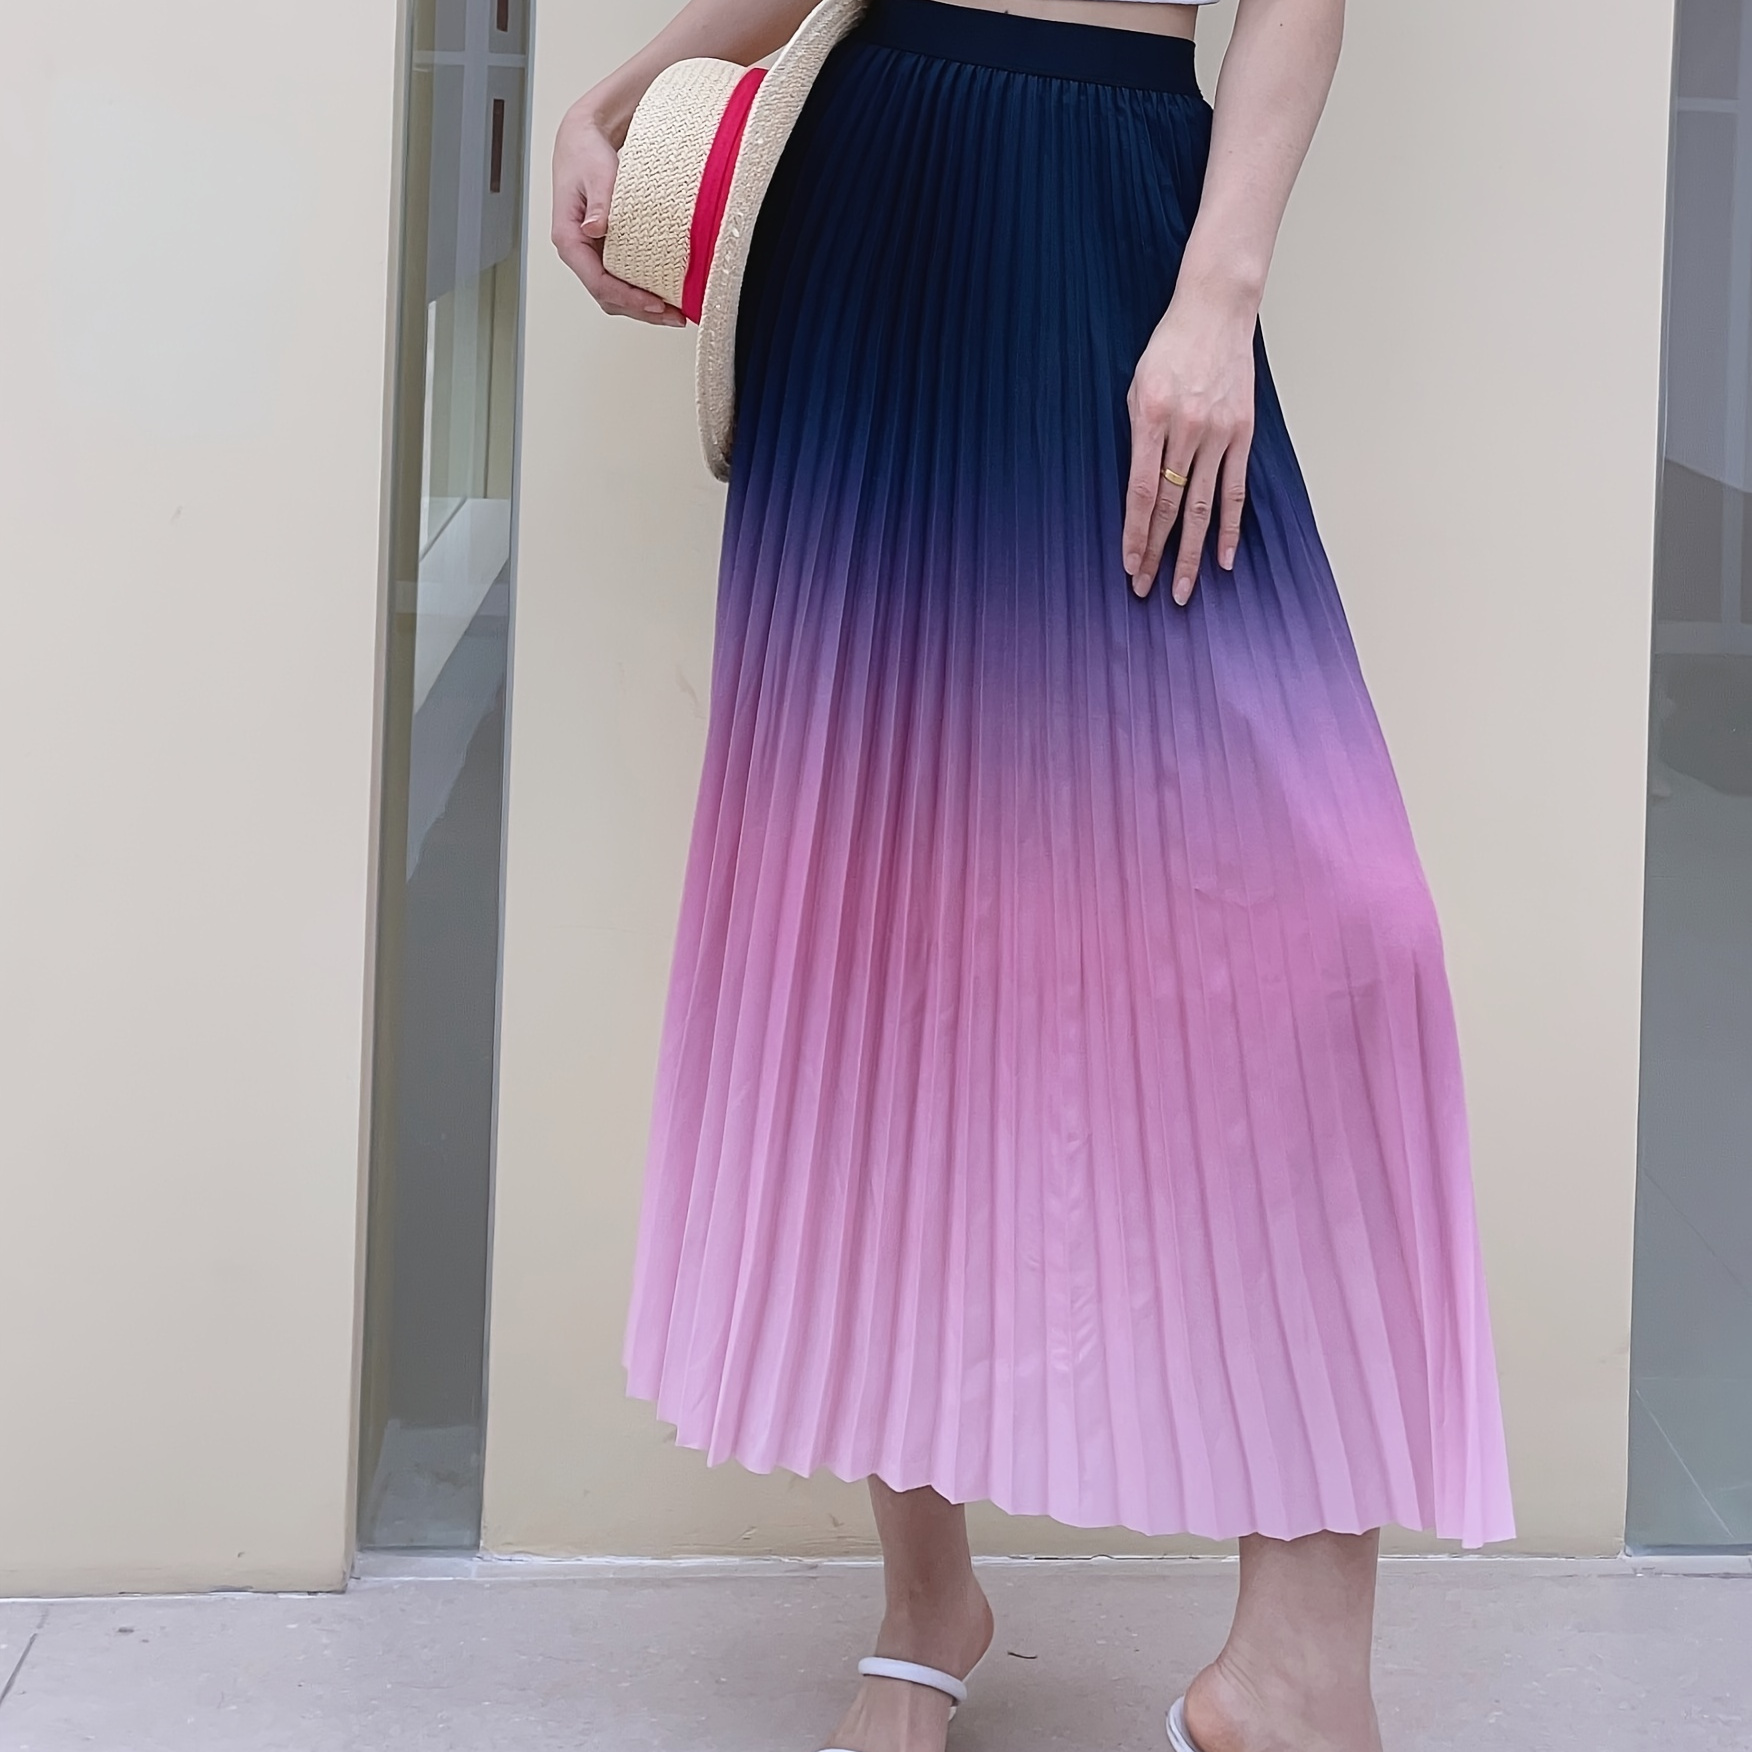 

Ombre Print High Waist Skirt, Elegant & Chic Flowy Hem Midi Pleated Skirt For Spring & Summer, Women's Clothing